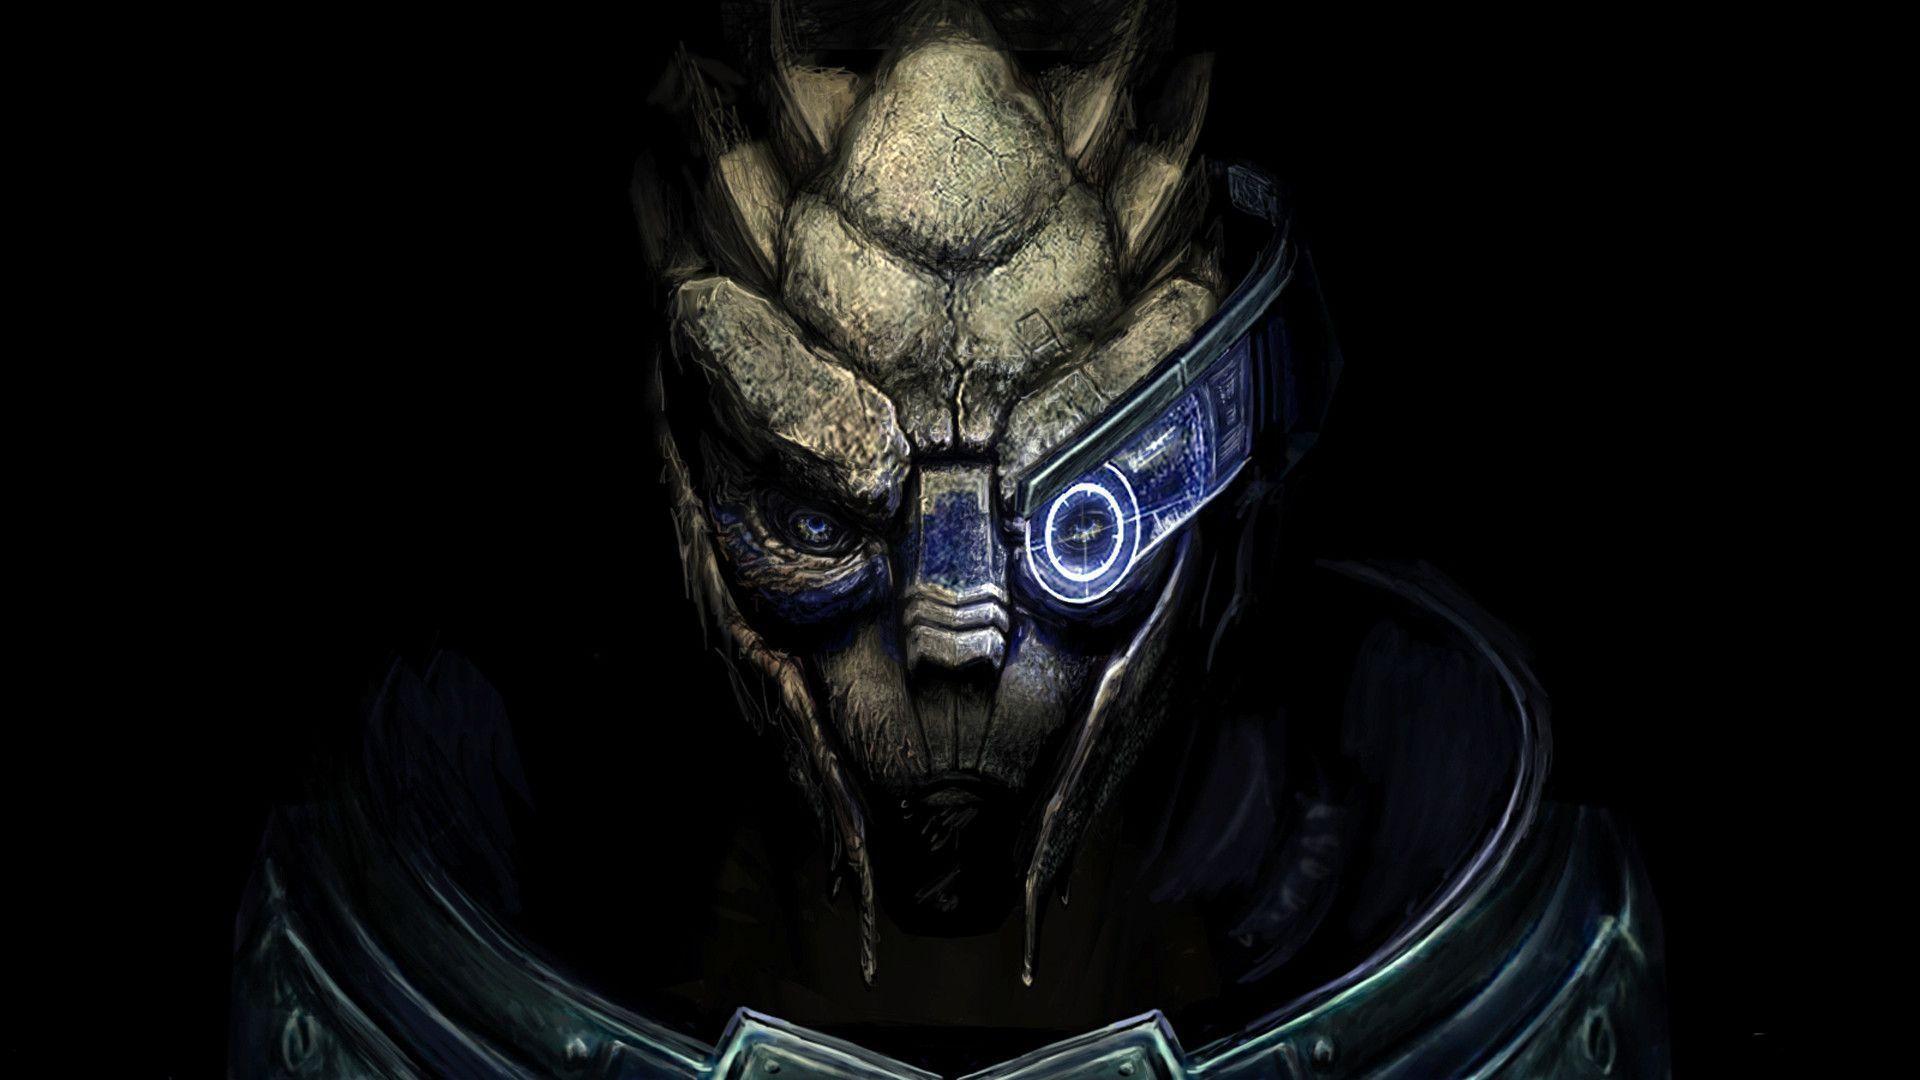 Garrus Vakarian Mass Effect Wallpaper 1920x1080 px Free Download